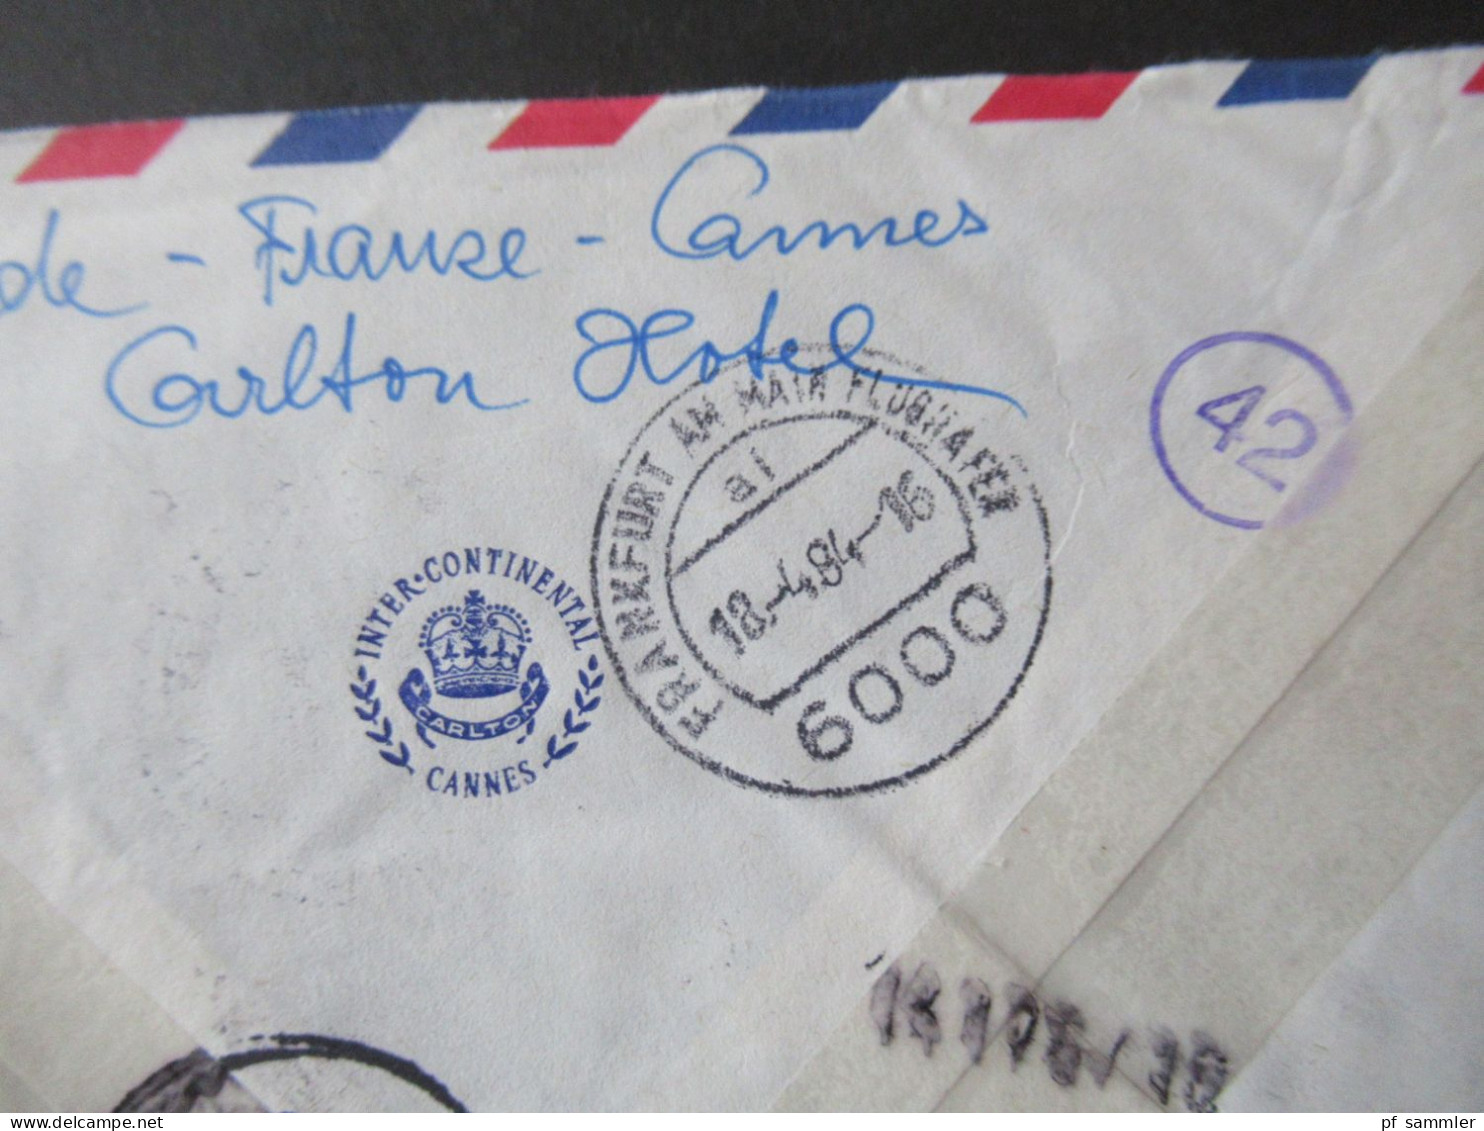 Frankreich 1984 Par Avion Expres Cannes - Kassel / Stempel Frankfurt Am Main Flughafen / Umschlag Inter Continental - Cartas & Documentos